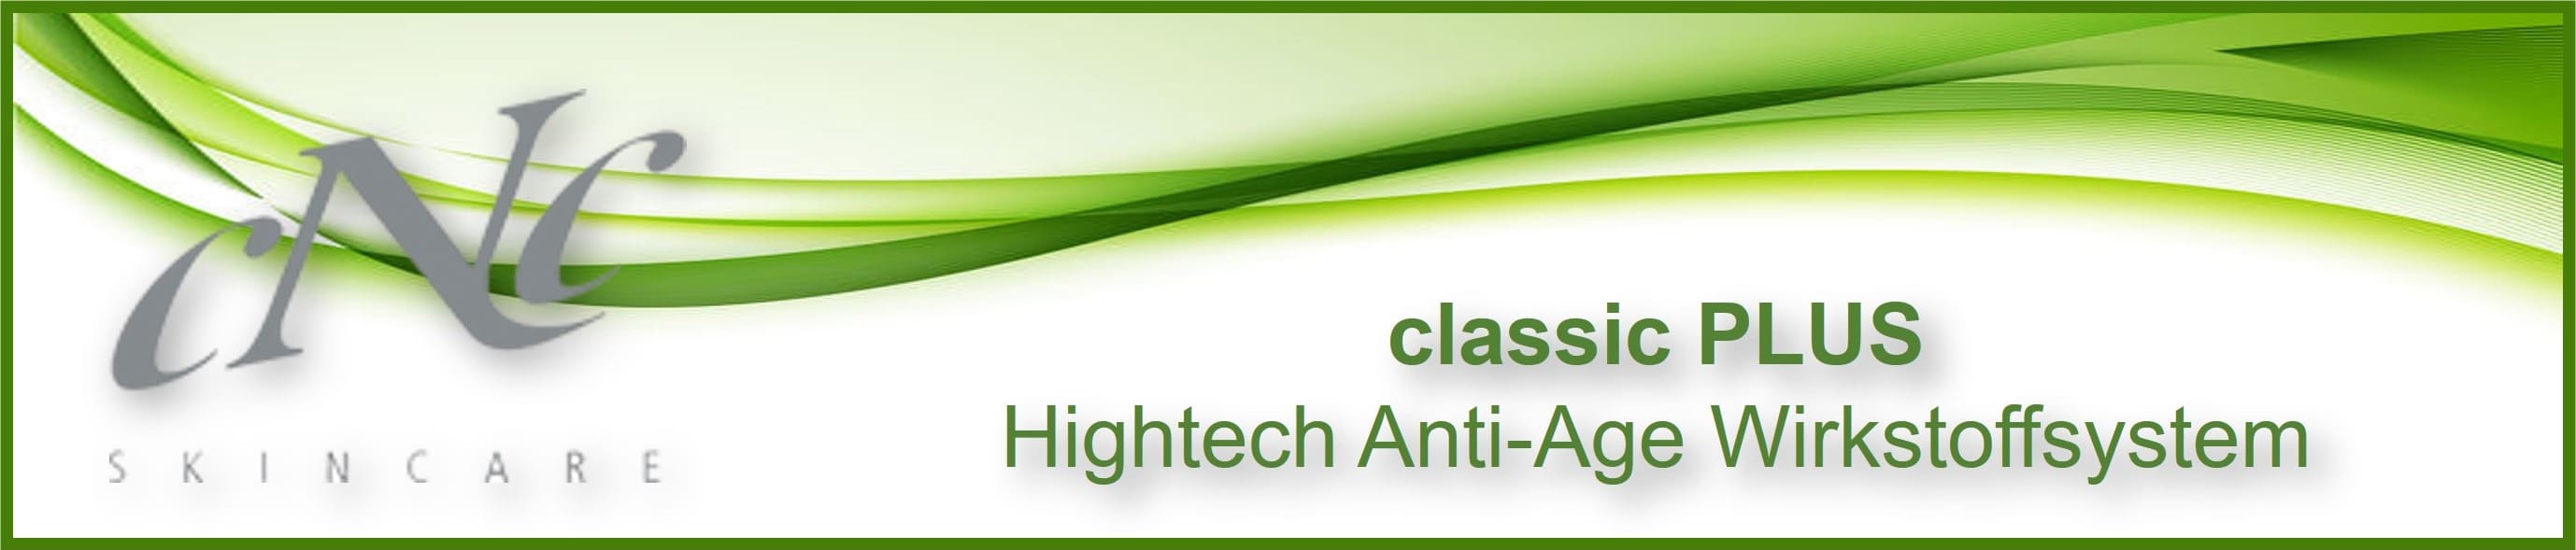 CNC classic PLUS - DiHyal Anti-Aging-Wirkkosmetik